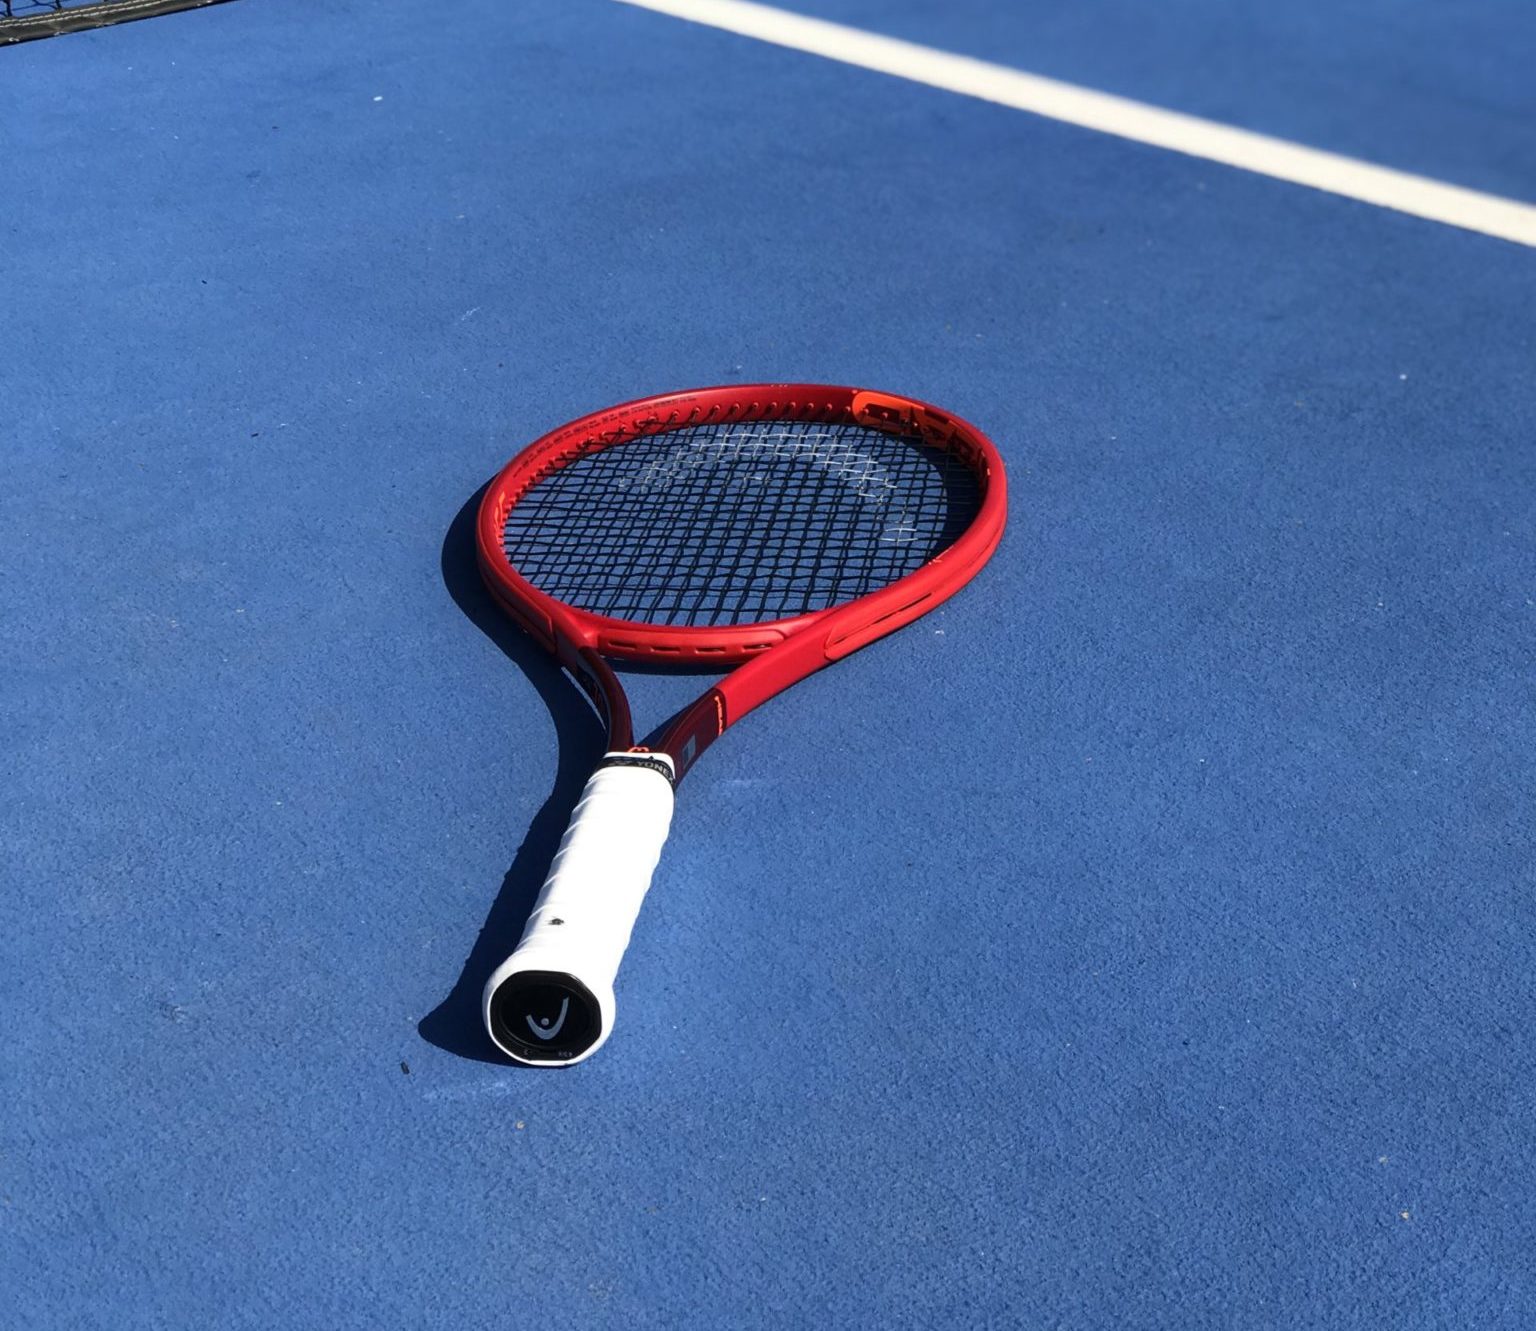 The Best Control Racquets - Top Ten Racquets for Control - Tennisnerd.net